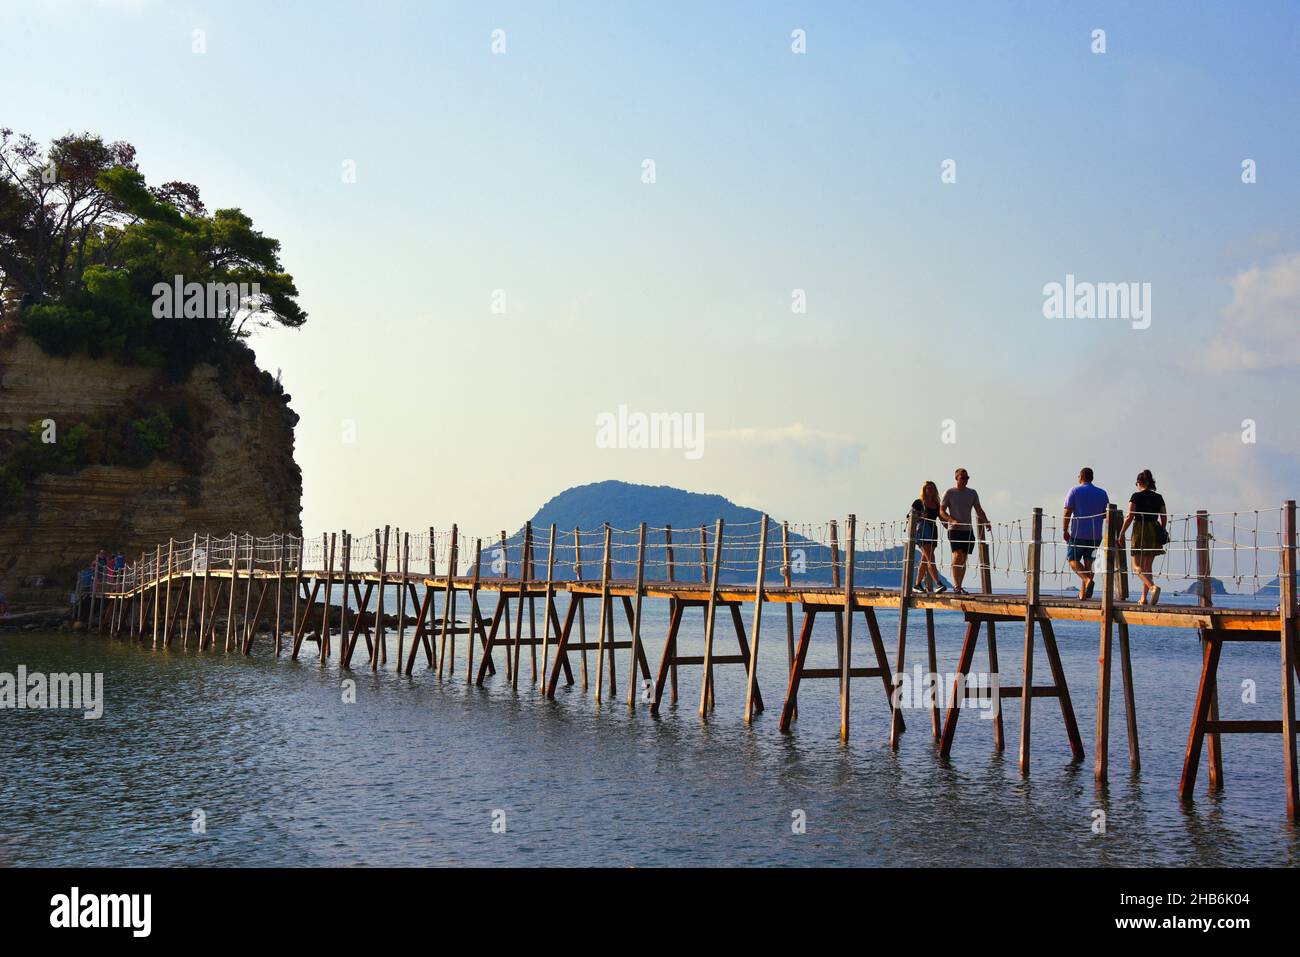 Puente de madera rickety a la pequeña isla de Cameo, Grecia, Islas Jónicas, Zakynthos, Laganas Foto de stock